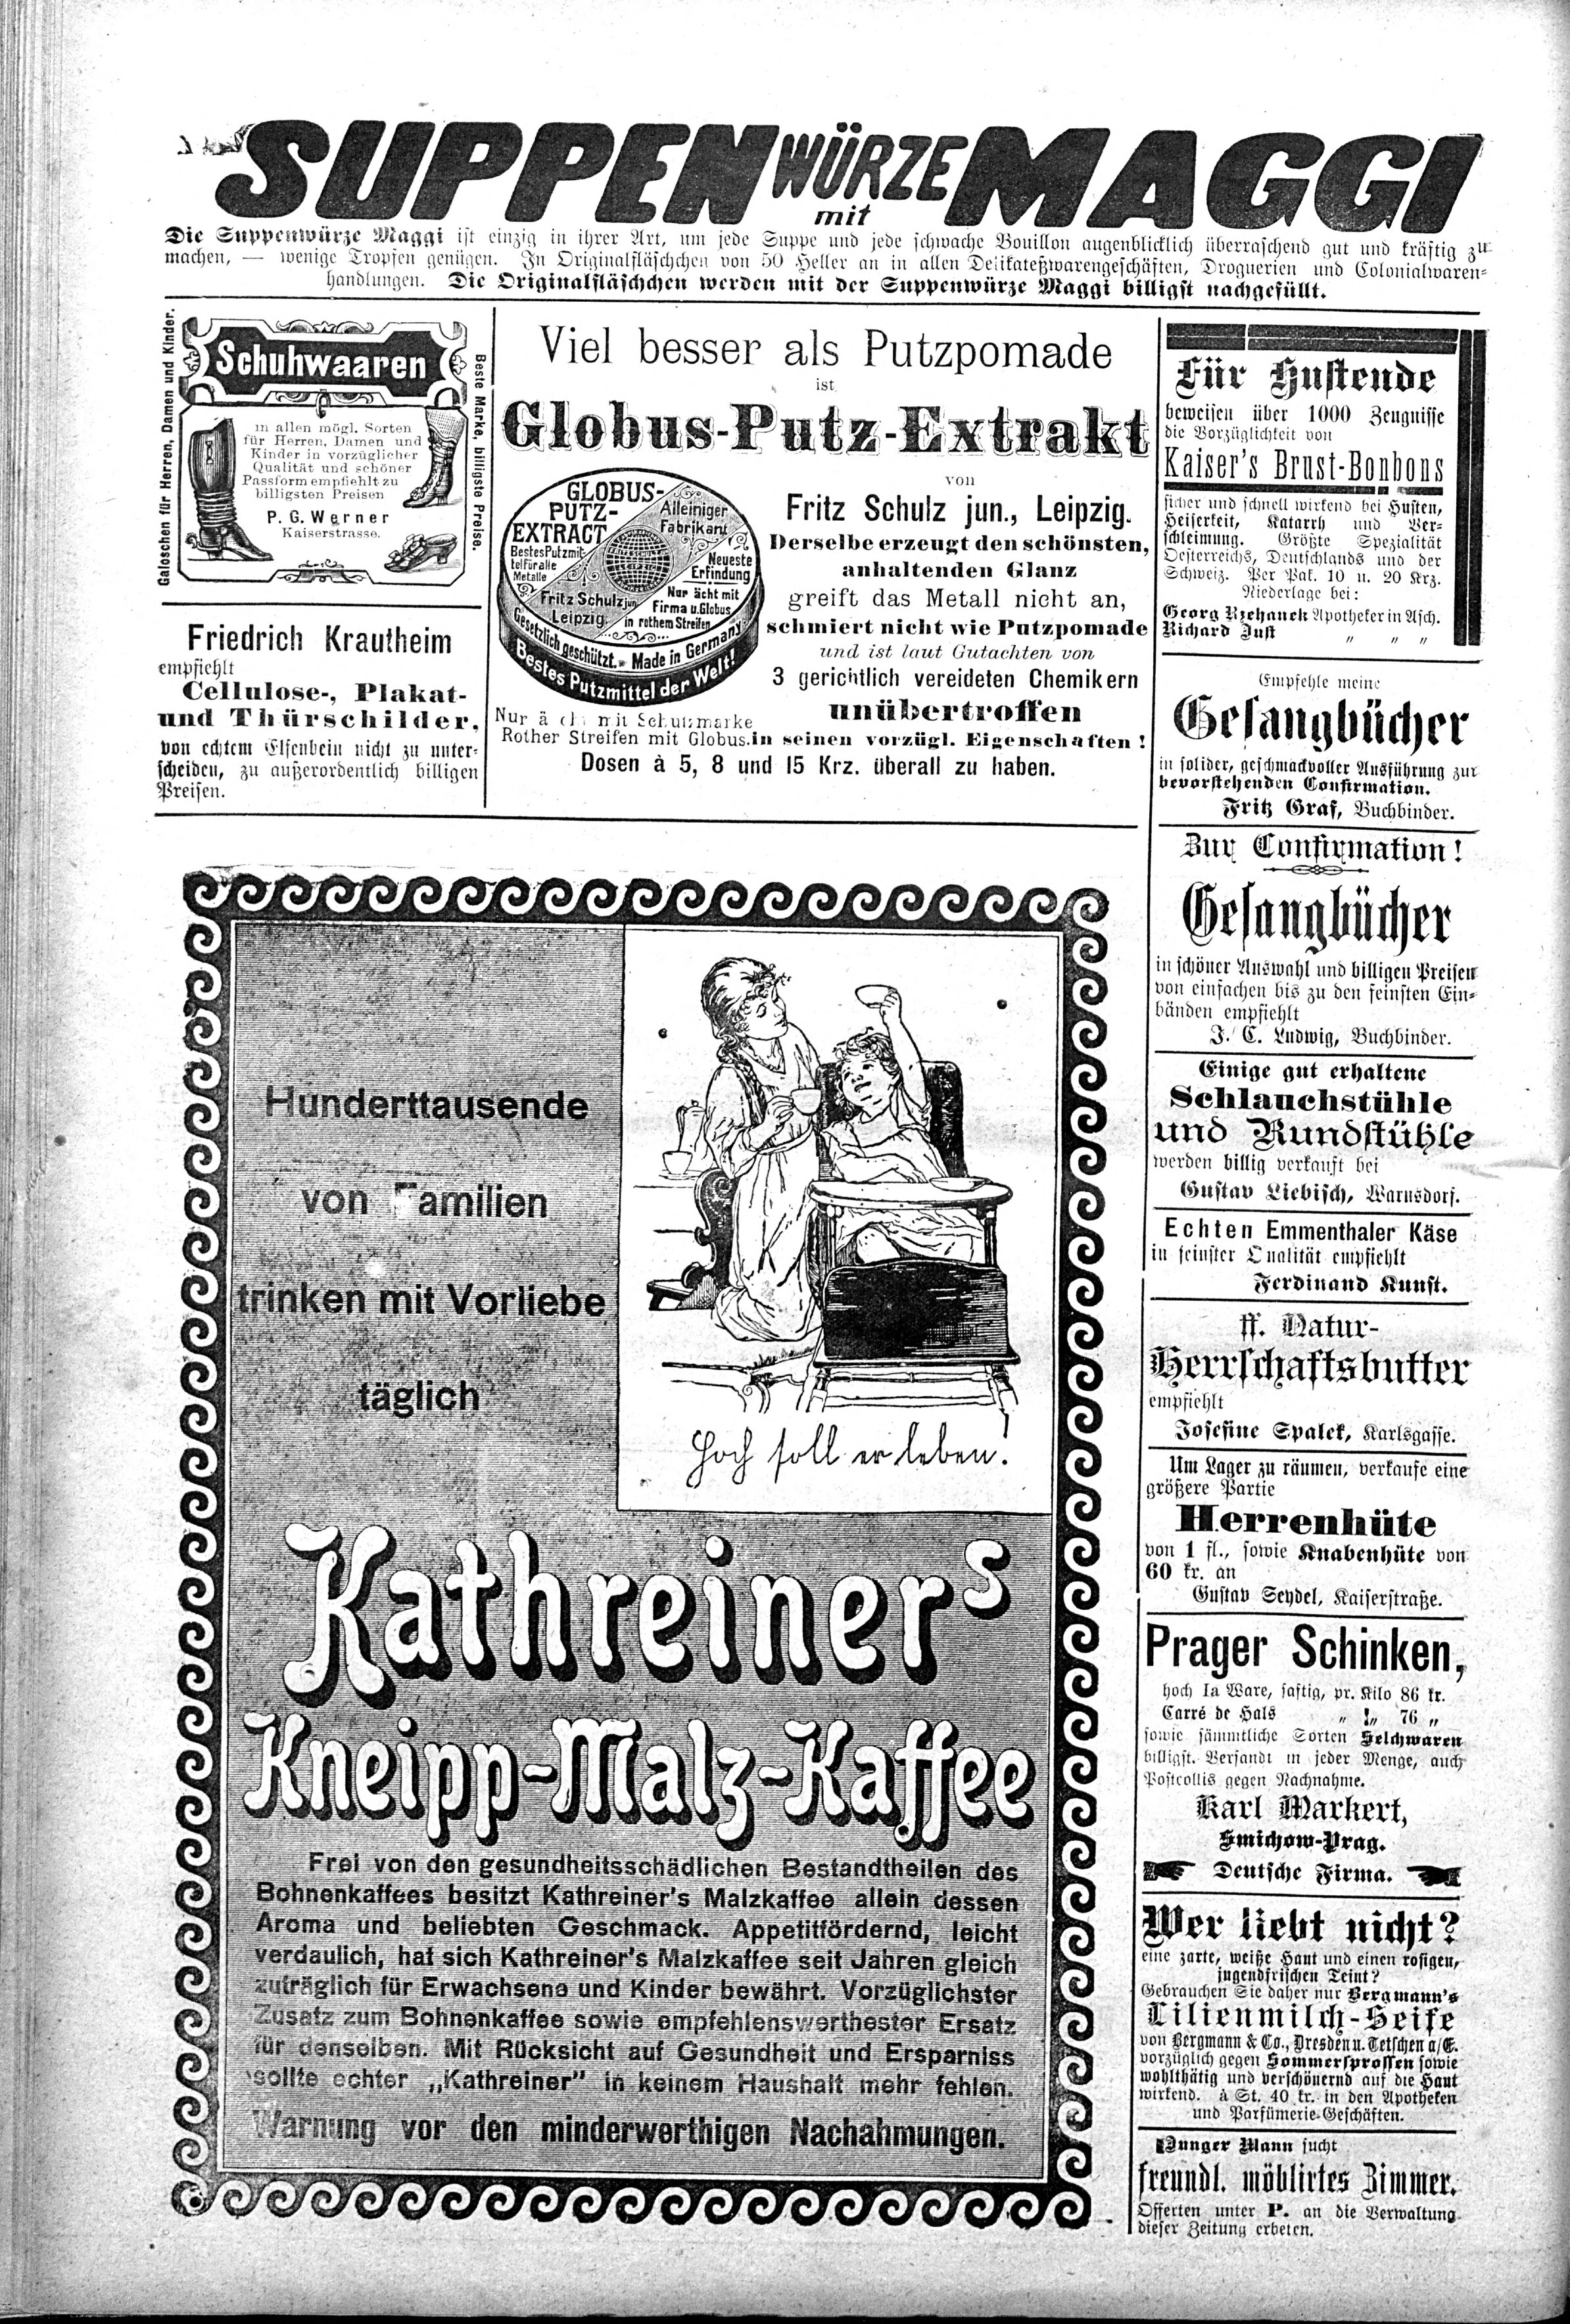 6. soap-ch_knihovna_ascher-zeitung-1898-03-12-n21_0900